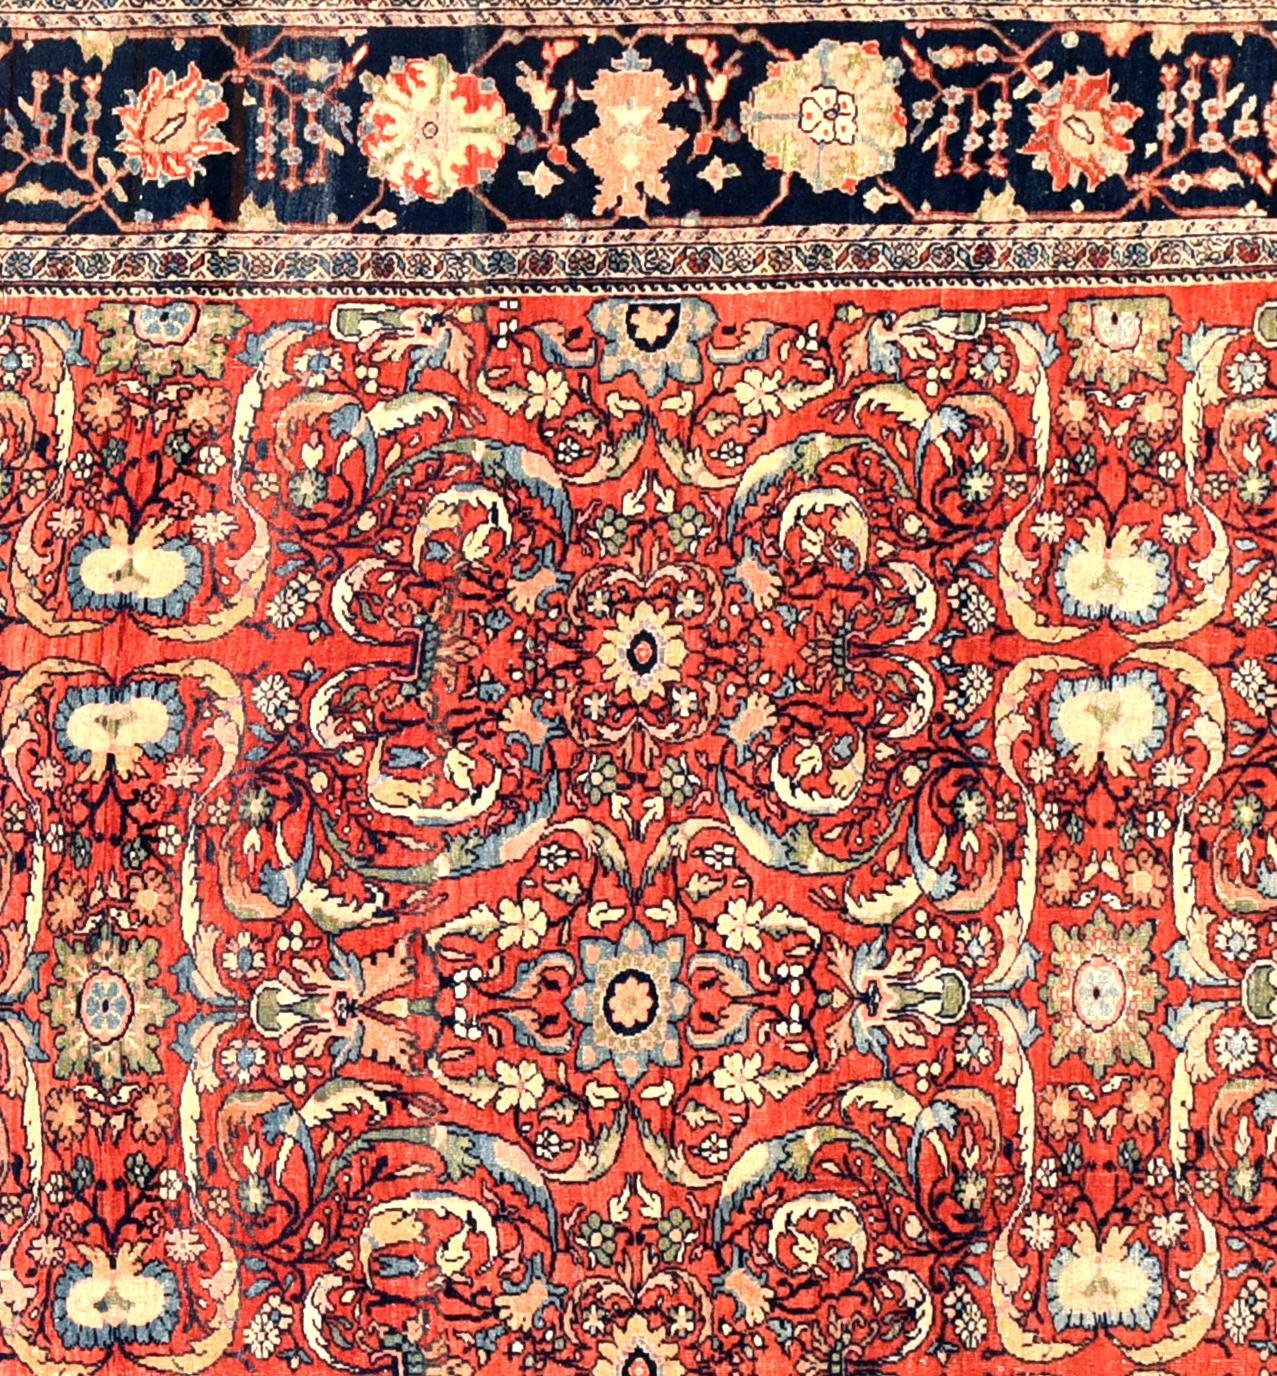 Persische Teppiche, die als Farahan bekannt sind, stammen aus einem Gebiet nördlich der Stadt Arak im Westen Irans, dessen persische Teppiche wohl die schönsten und bekanntesten im 19. Eleganz, zurückhaltende Raffinesse und Subtilität kennzeichnen